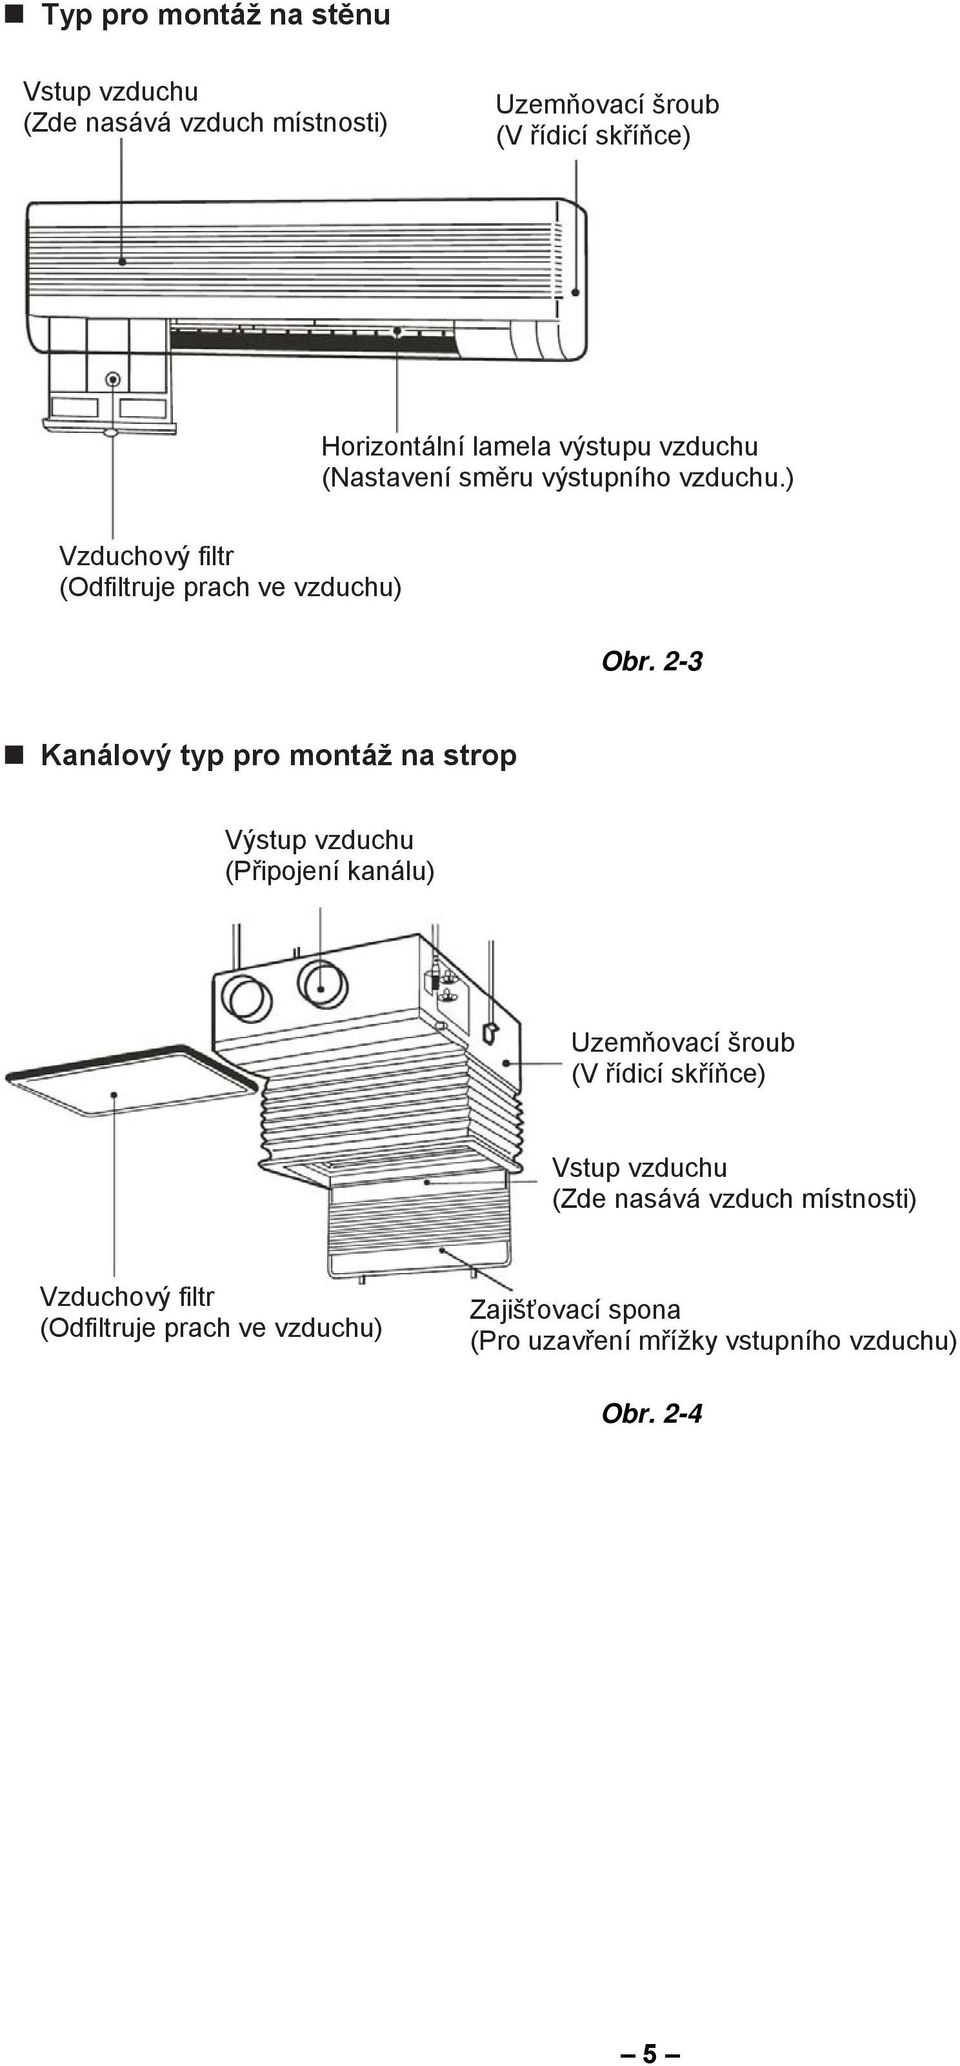 2-3 Kanálový typ pro montáž na strop Výstup vzduchu (Připojení kanálu) Uzemňovací šroub (V řídicí skříňce) Vstup vzduchu